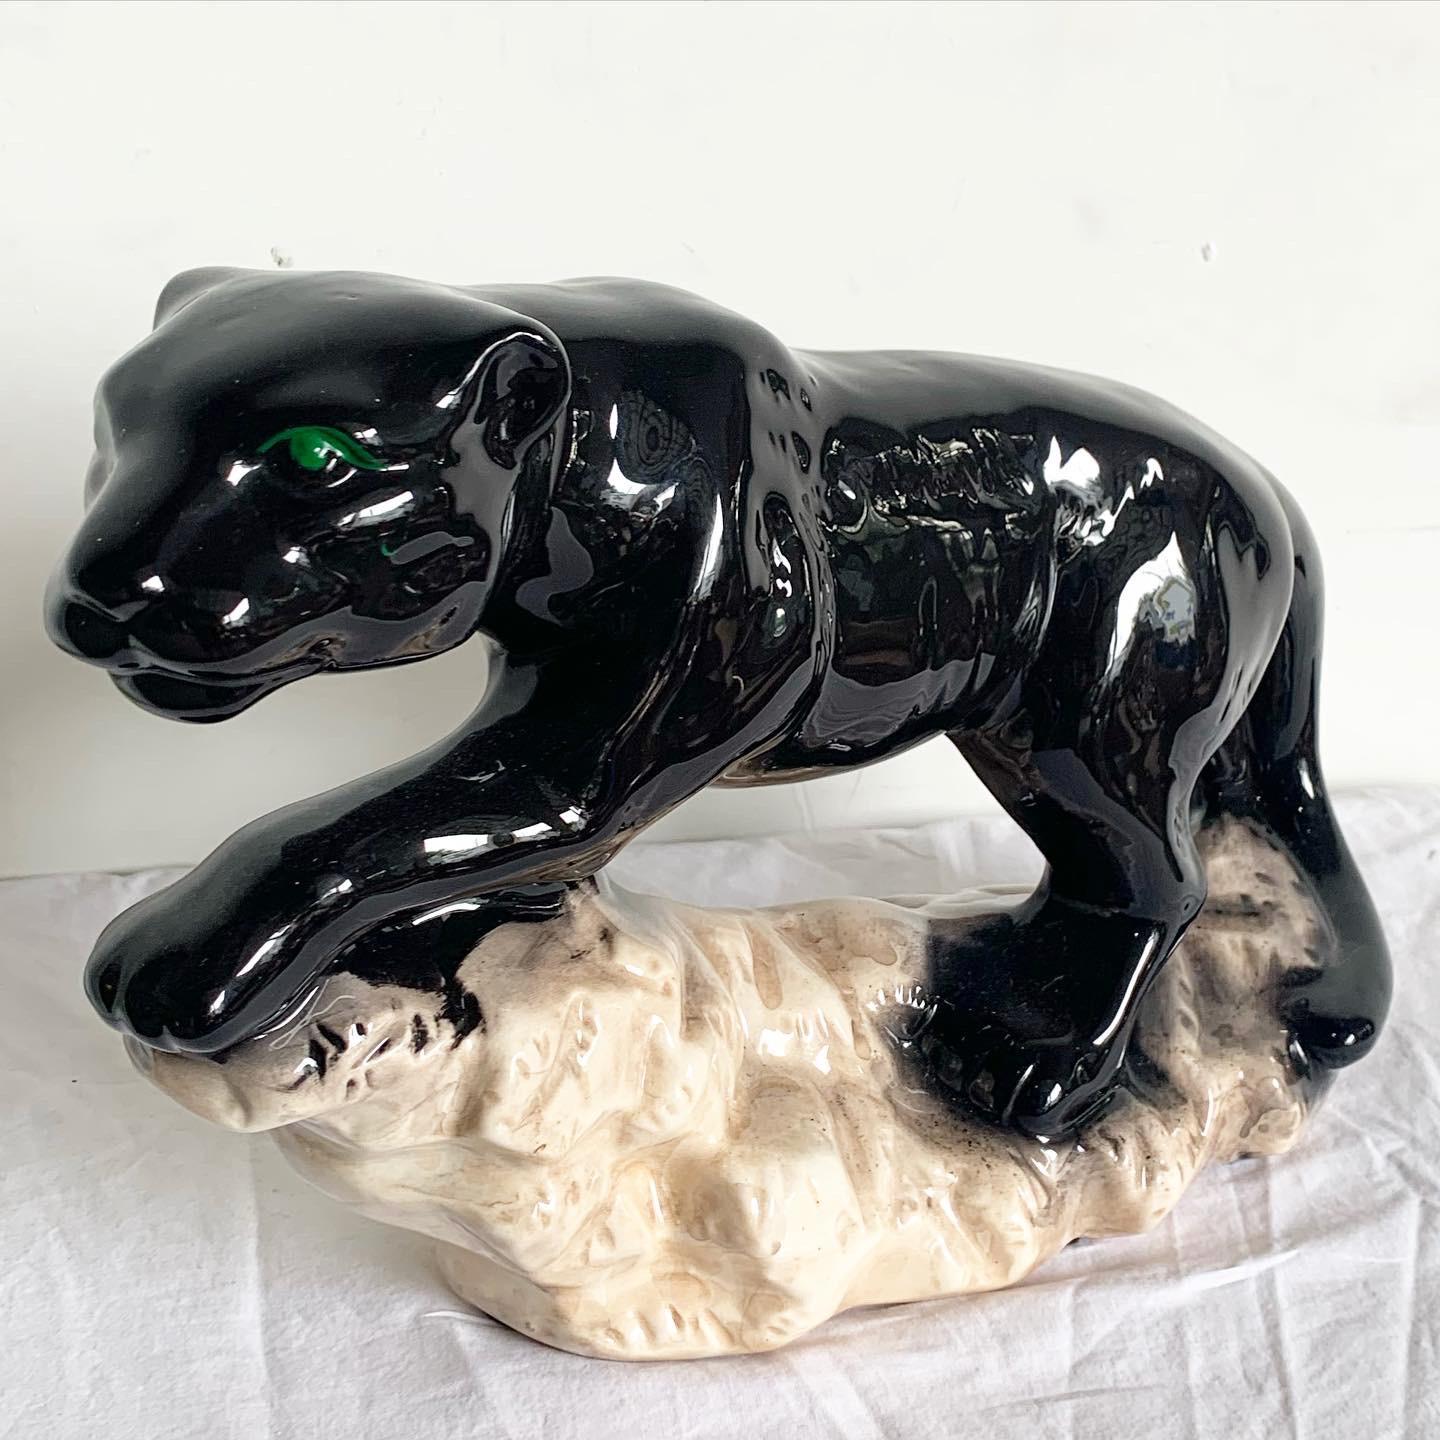 Peppen Sie Ihre Einrichtung mit der Postmodern Black Gloss Ceramic Panther Sculpture auf. Dieses auffällige, in tiefem Schwarz glänzende Stück fängt die Eleganz und Stärke des Panthers ein. Die glänzende Oberfläche aus hochwertiger Keramik hebt die